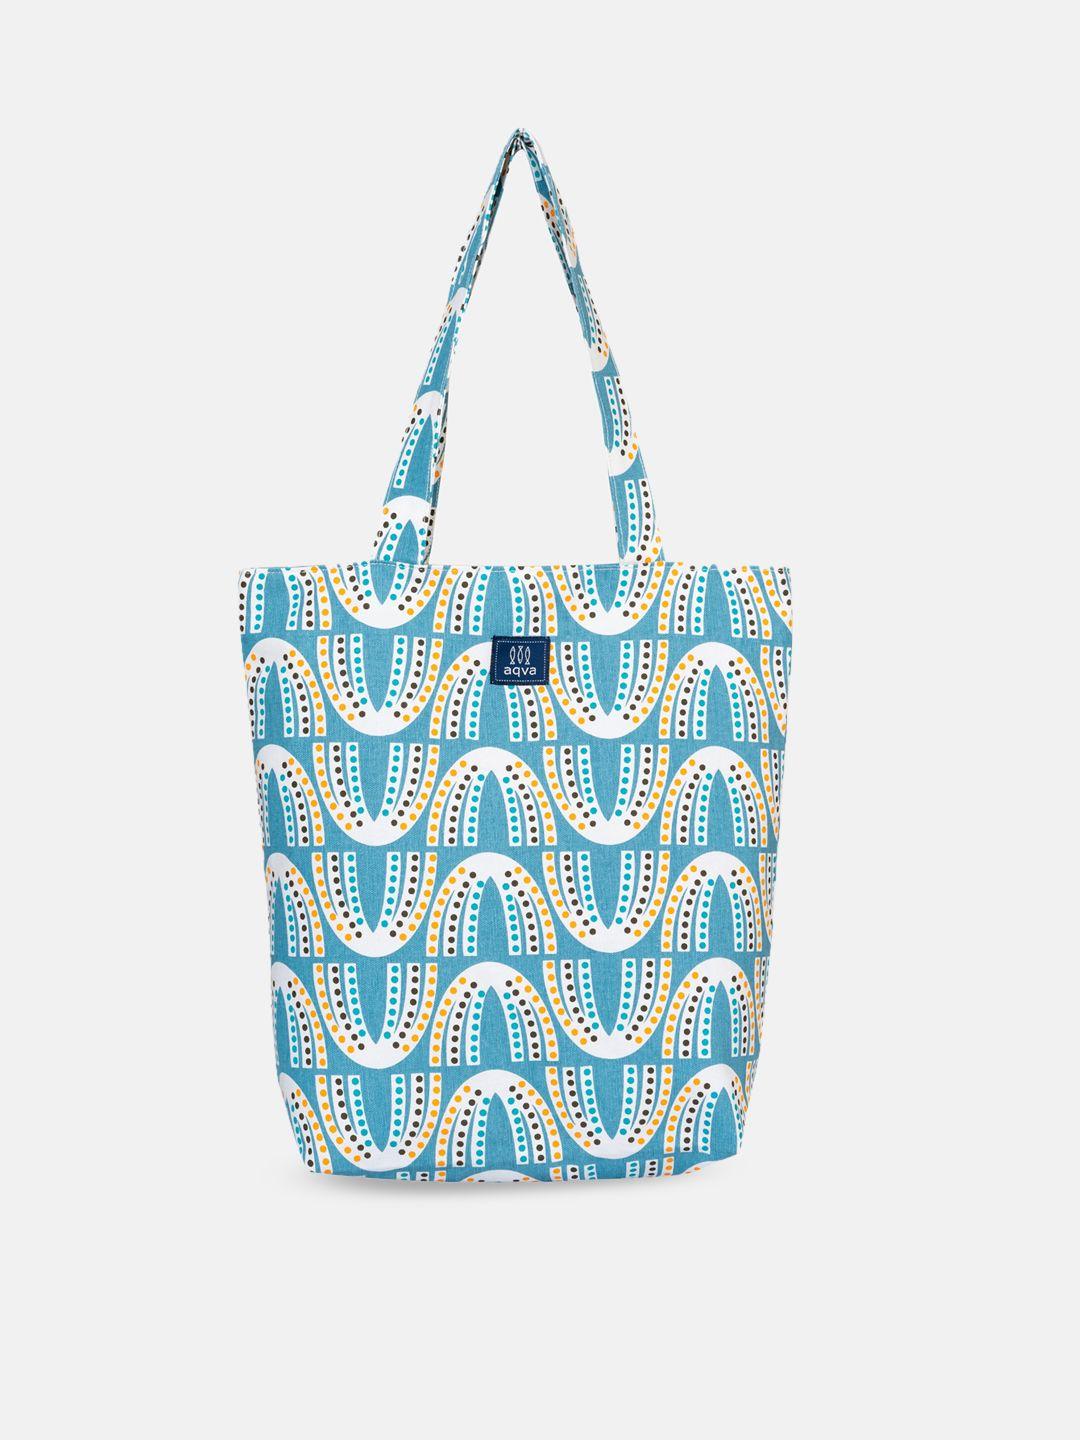 aqva blue shopper tote bag